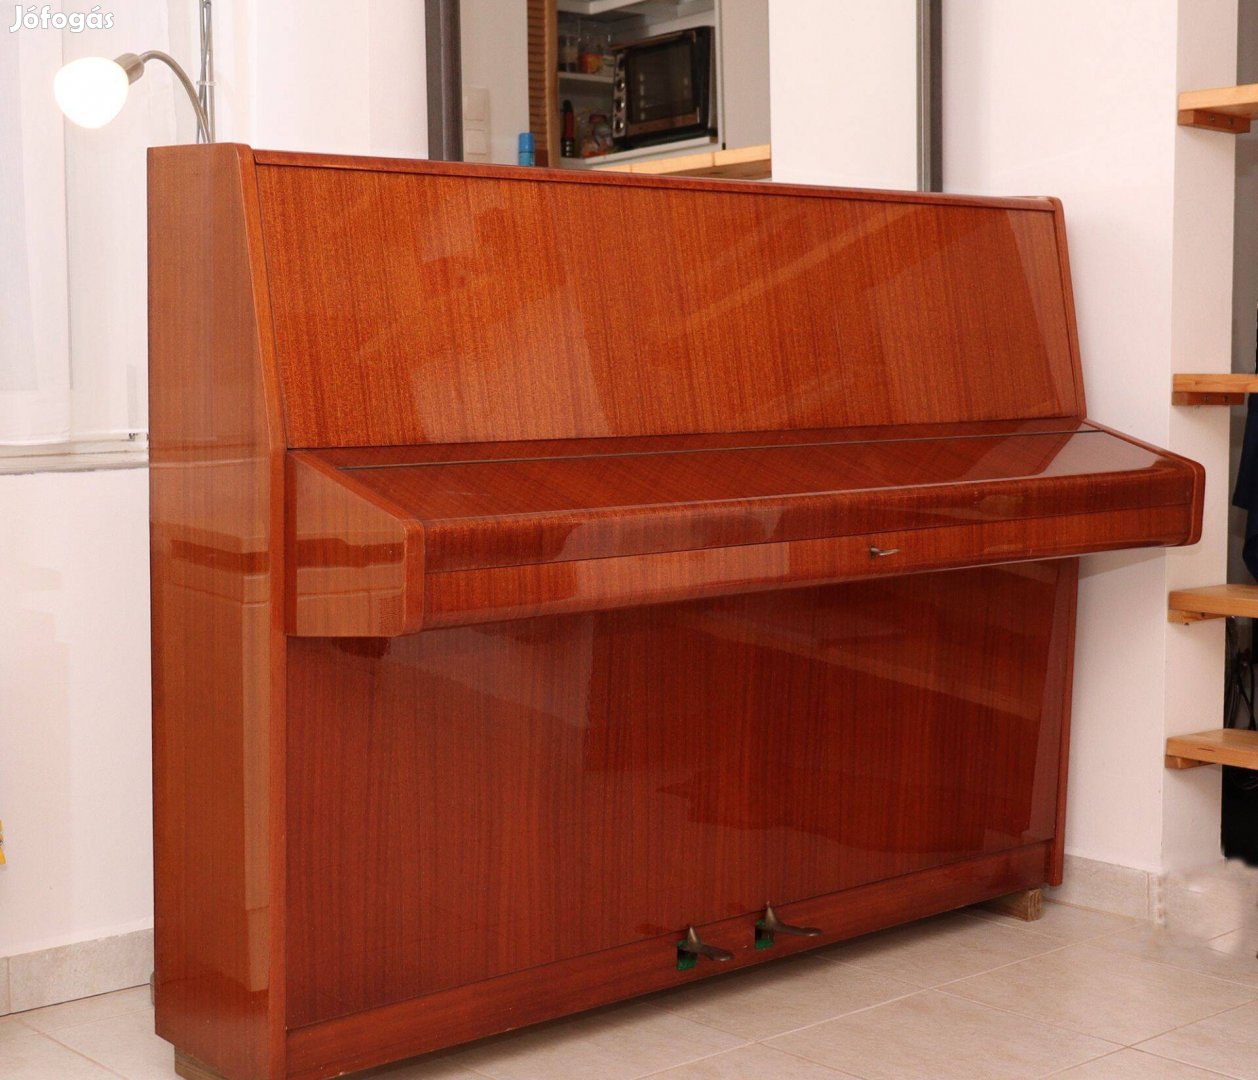 Geyer pianínó kitűnő állapotban eladó Kaposváron